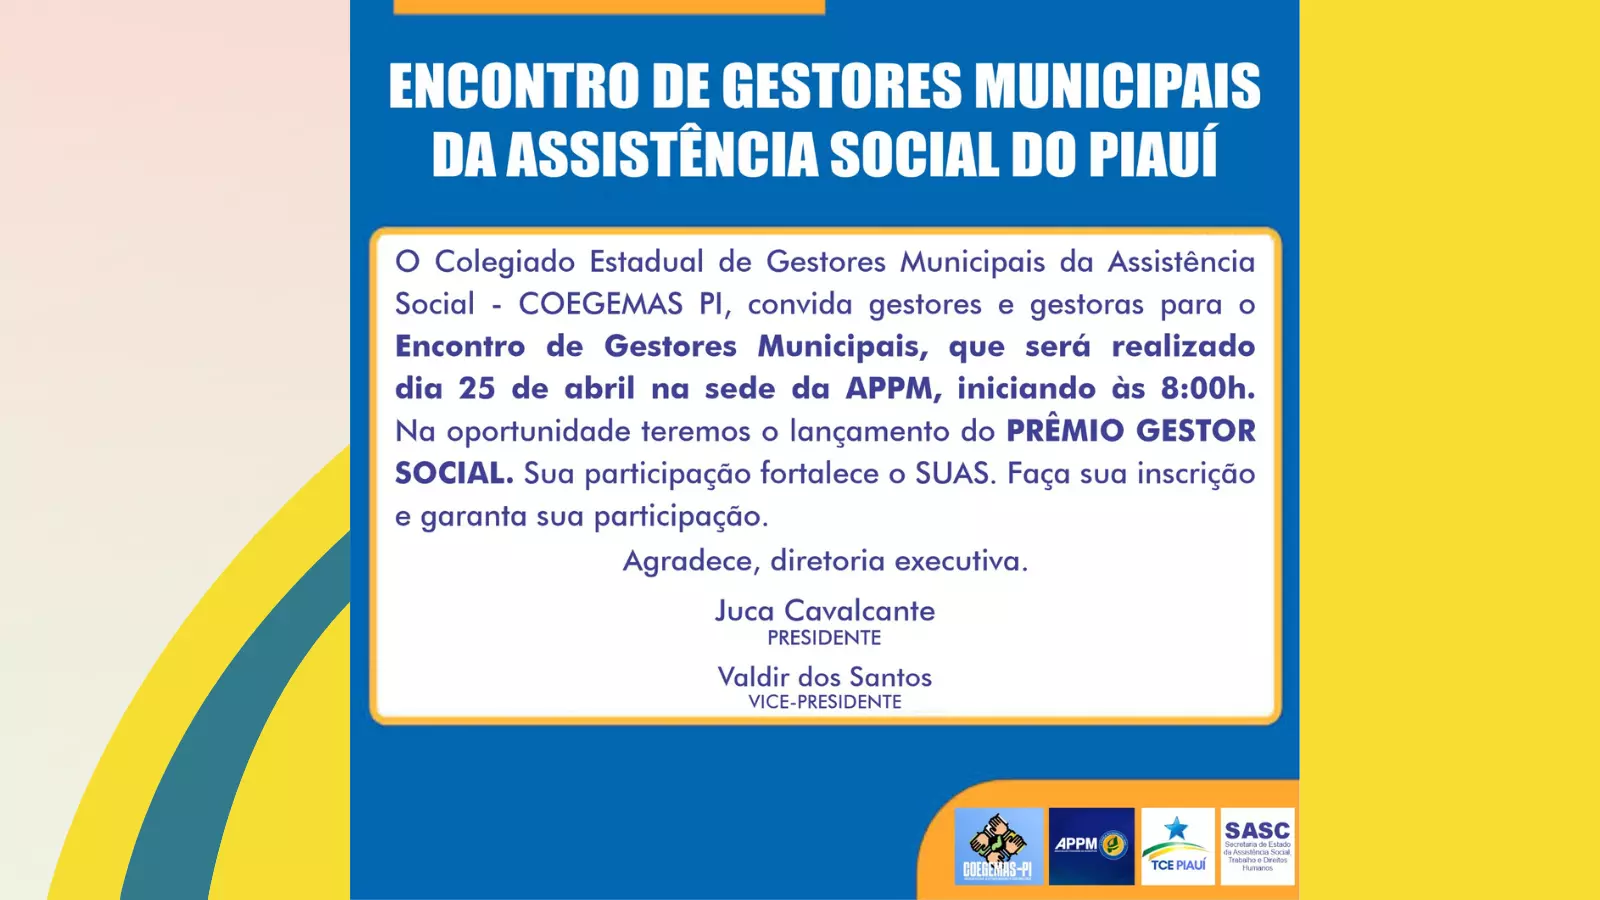 COEGEMAS/PI - Encontro de Gestores Municipais da Assistência Social do Piauí